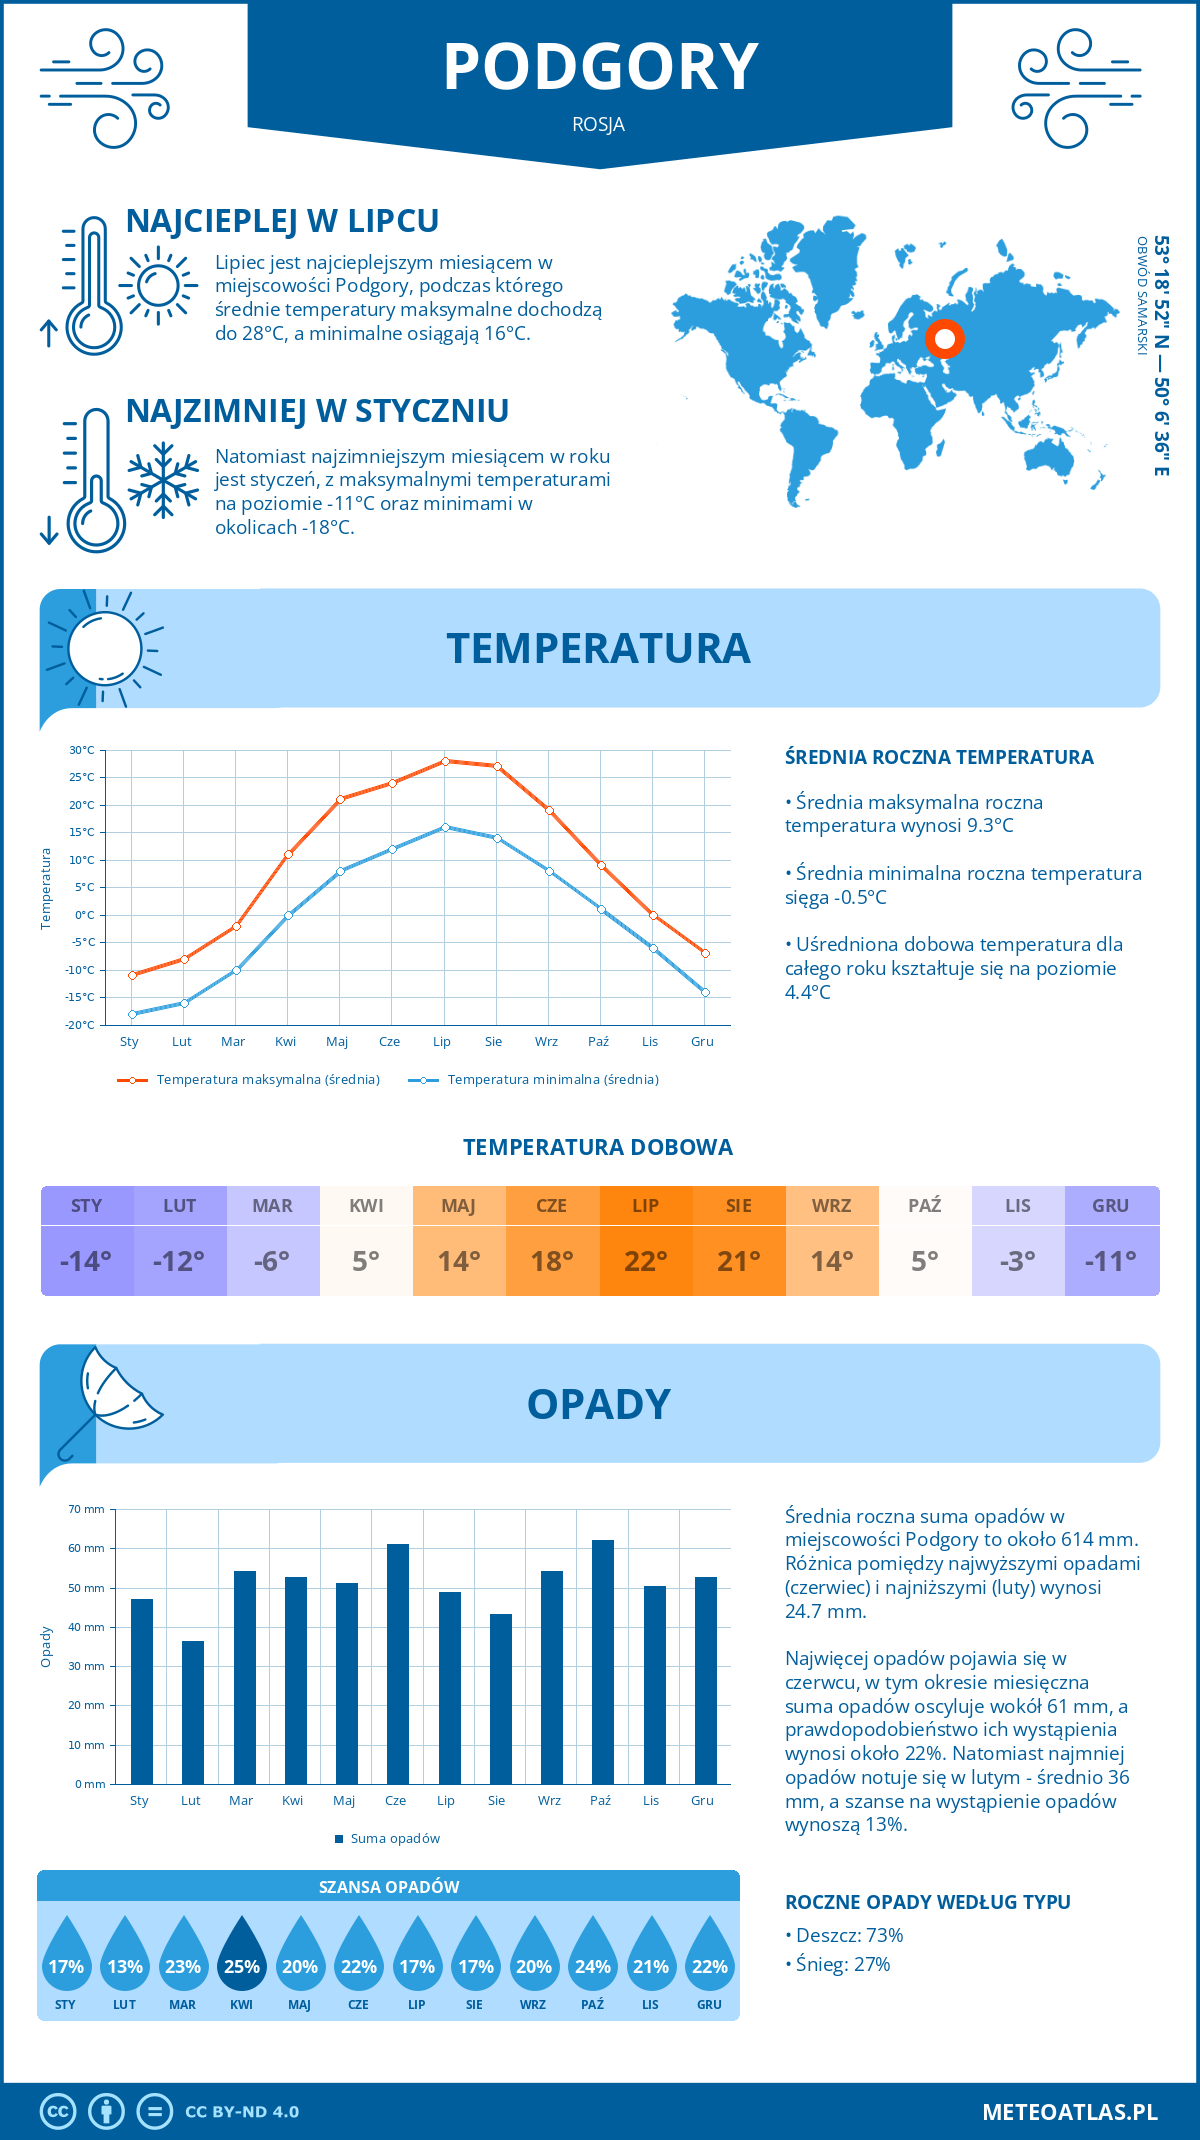 Pogoda Podgory (Rosja). Temperatura oraz opady.